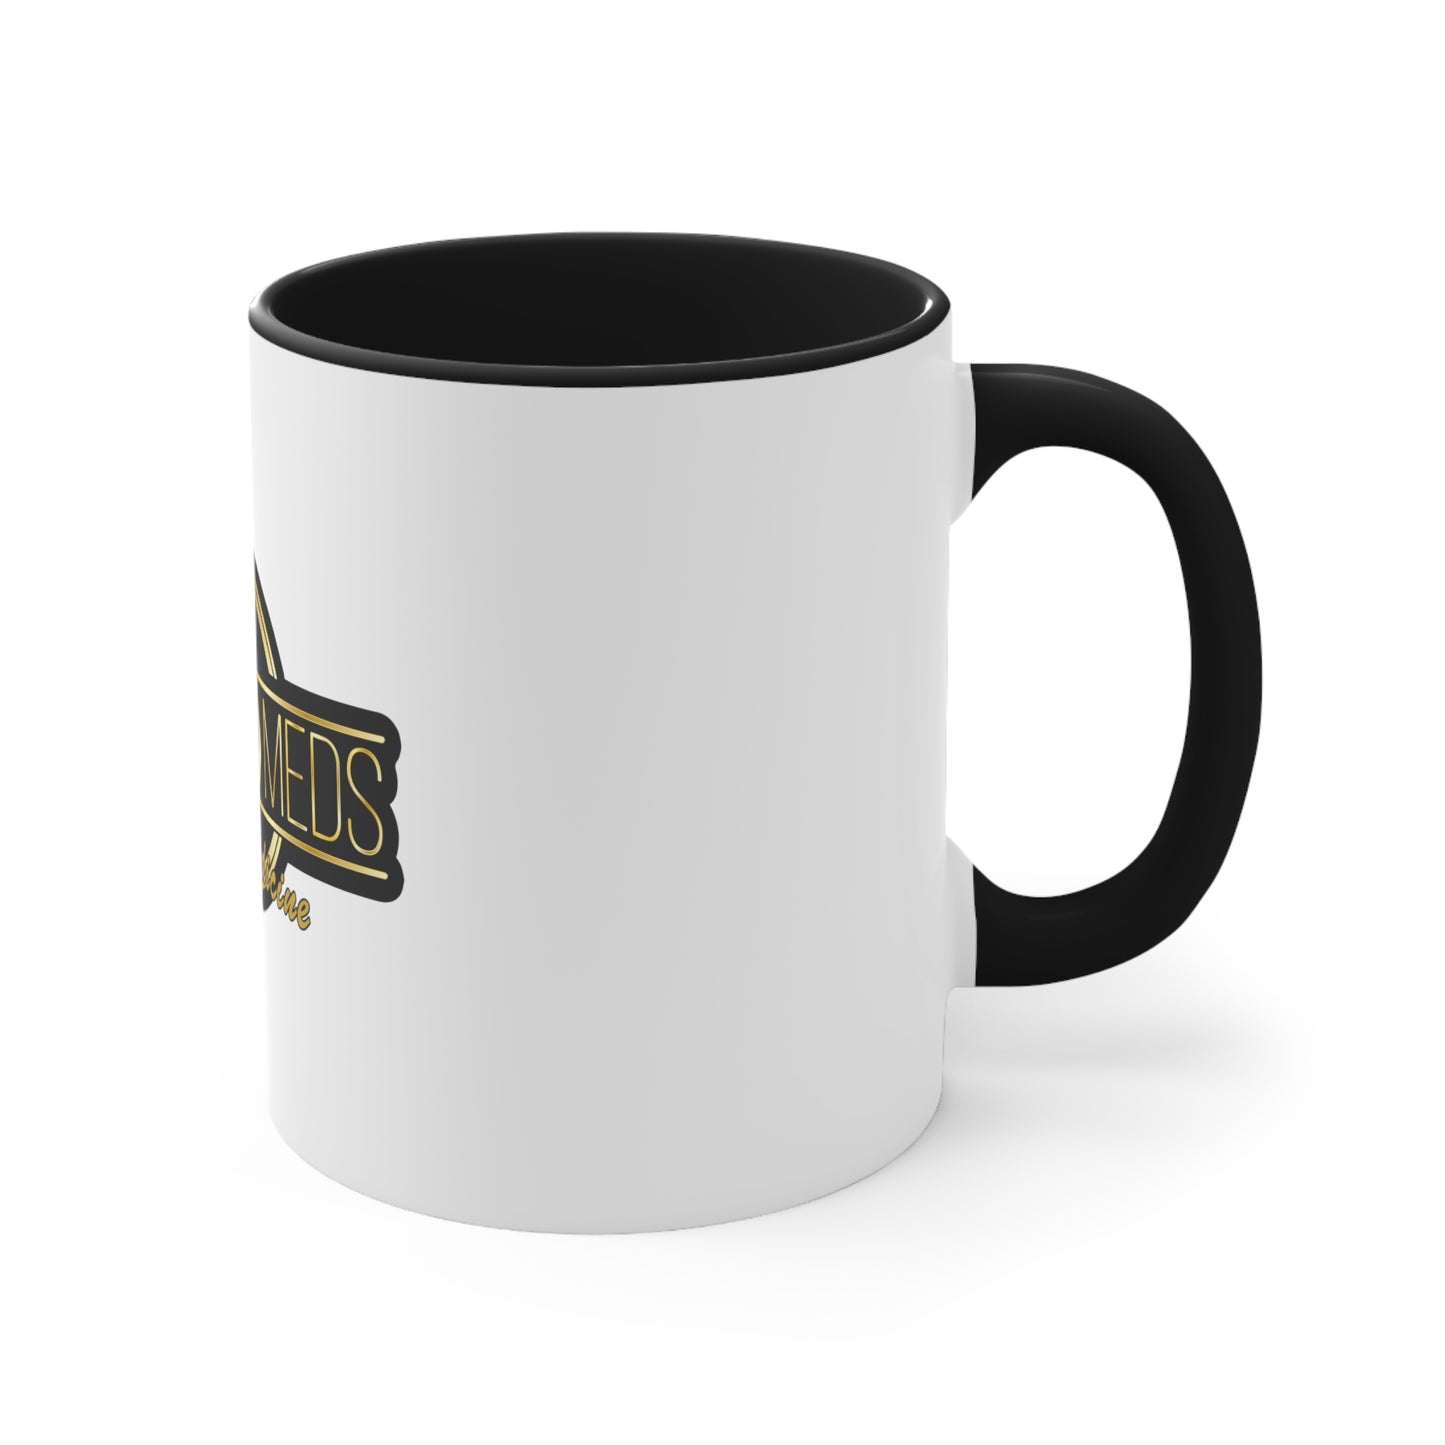 VapeMeds® Coffee Mug, 11oz